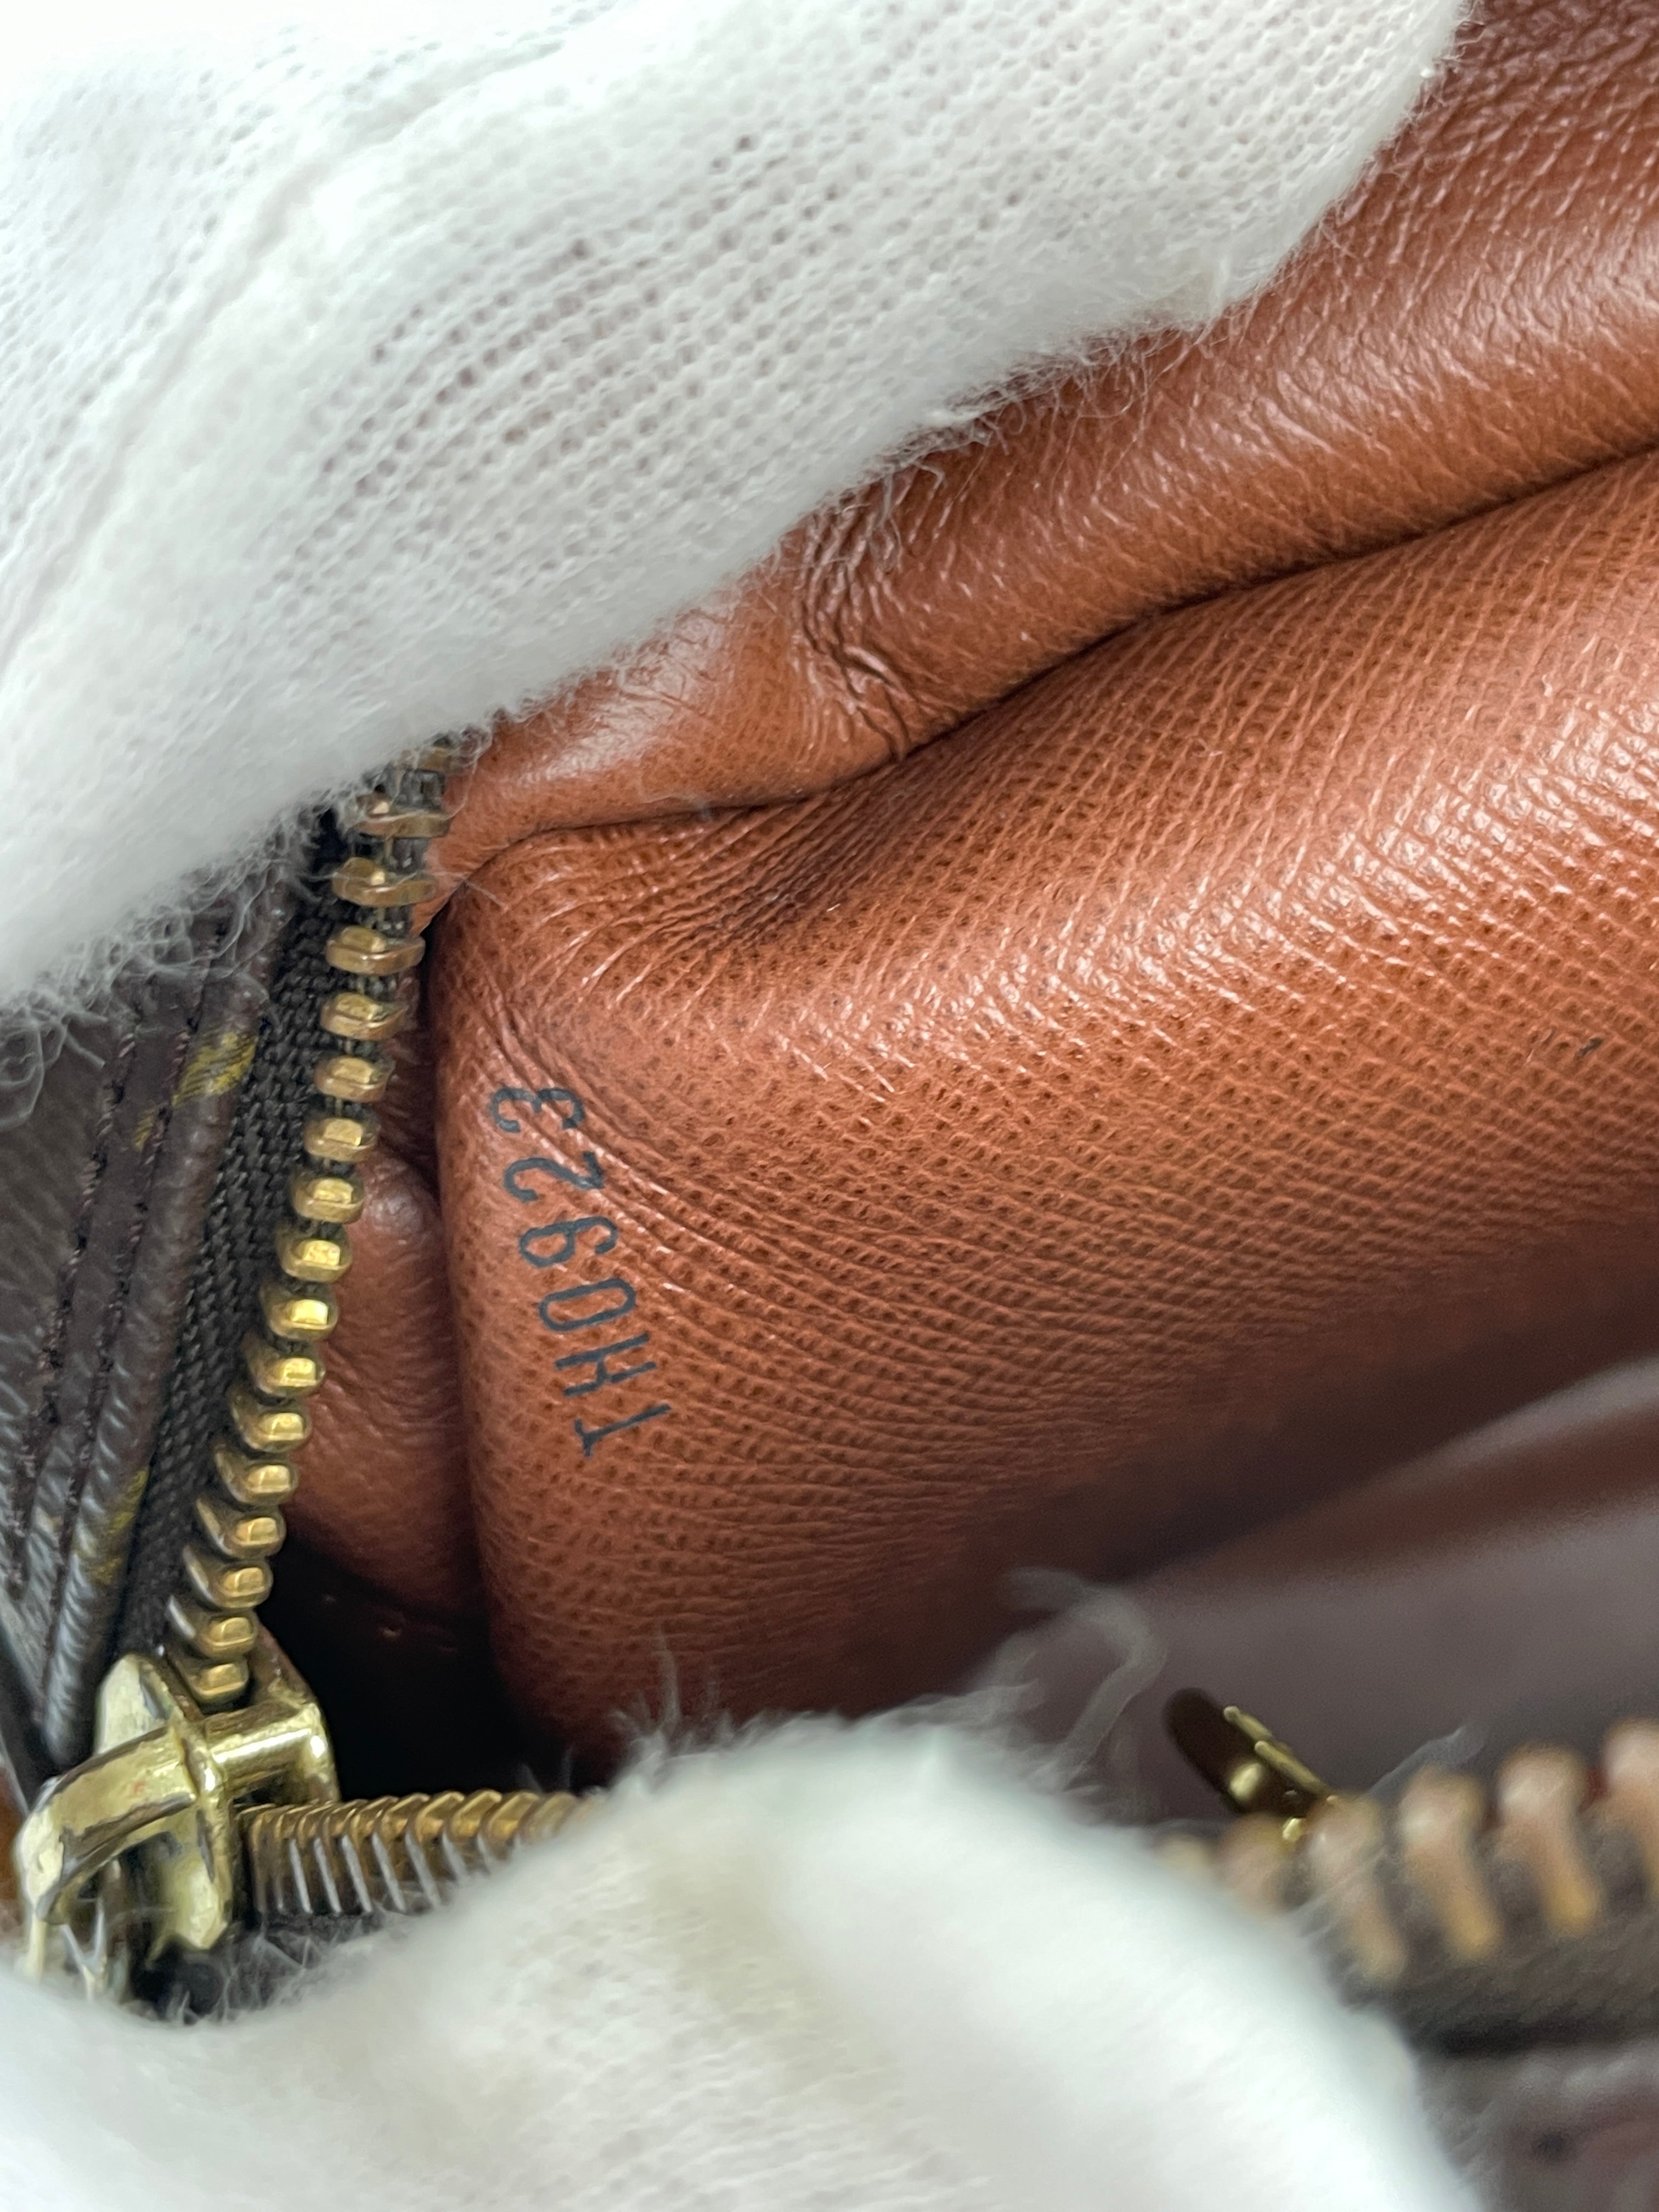 Louis Vuitton Blois Shoulder Bag Used (6663)